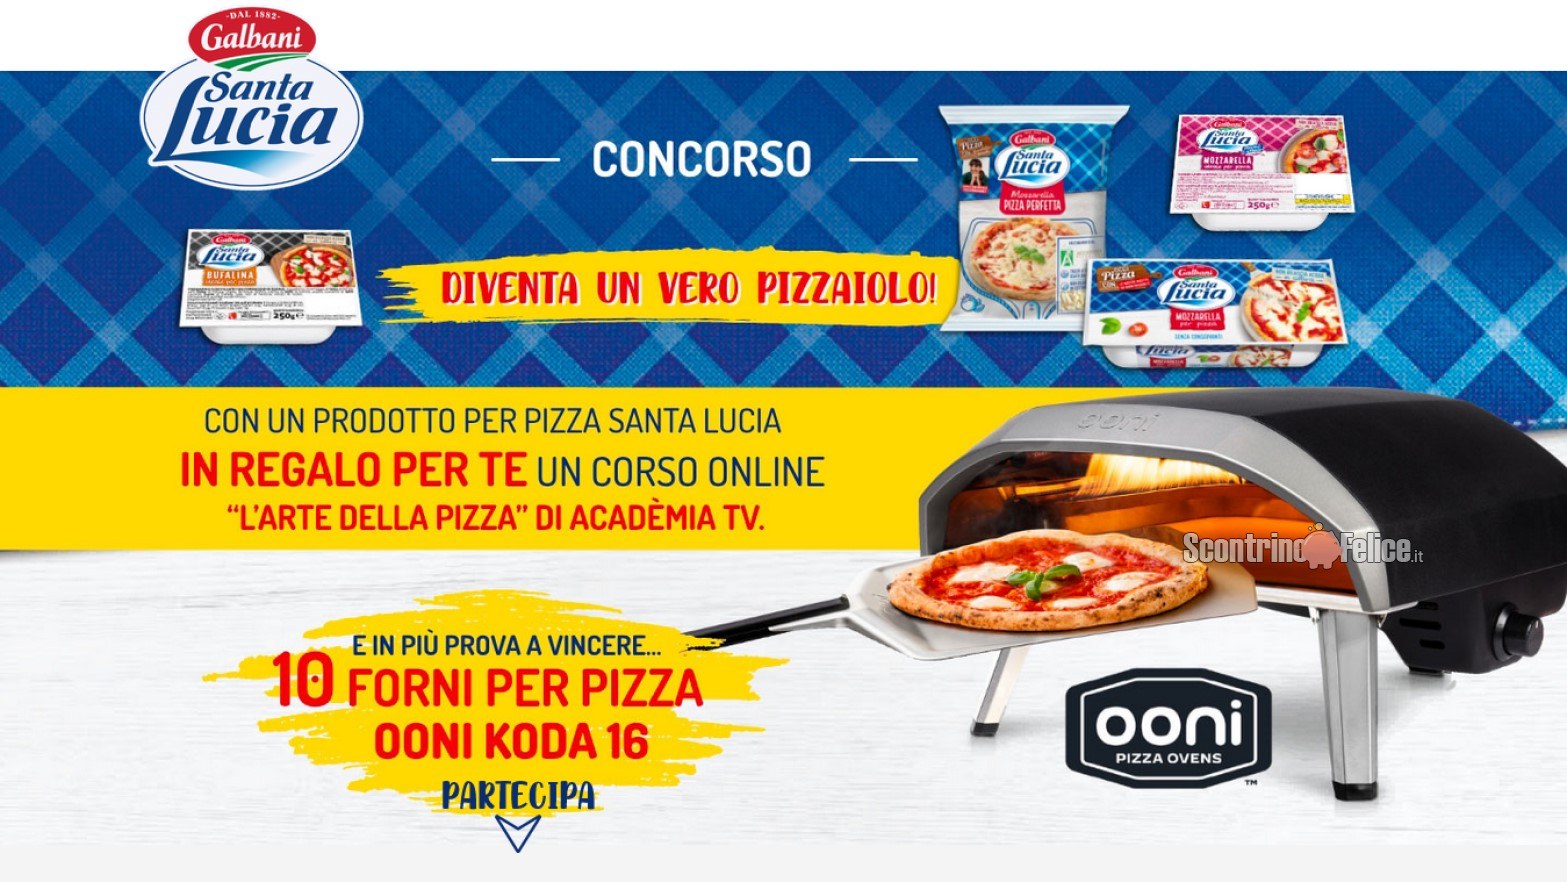 Concorso Santa Lucia Galbani “Diventa un vero piazzaiolo”: vinci 10 forni per pizza OONI KODA 16